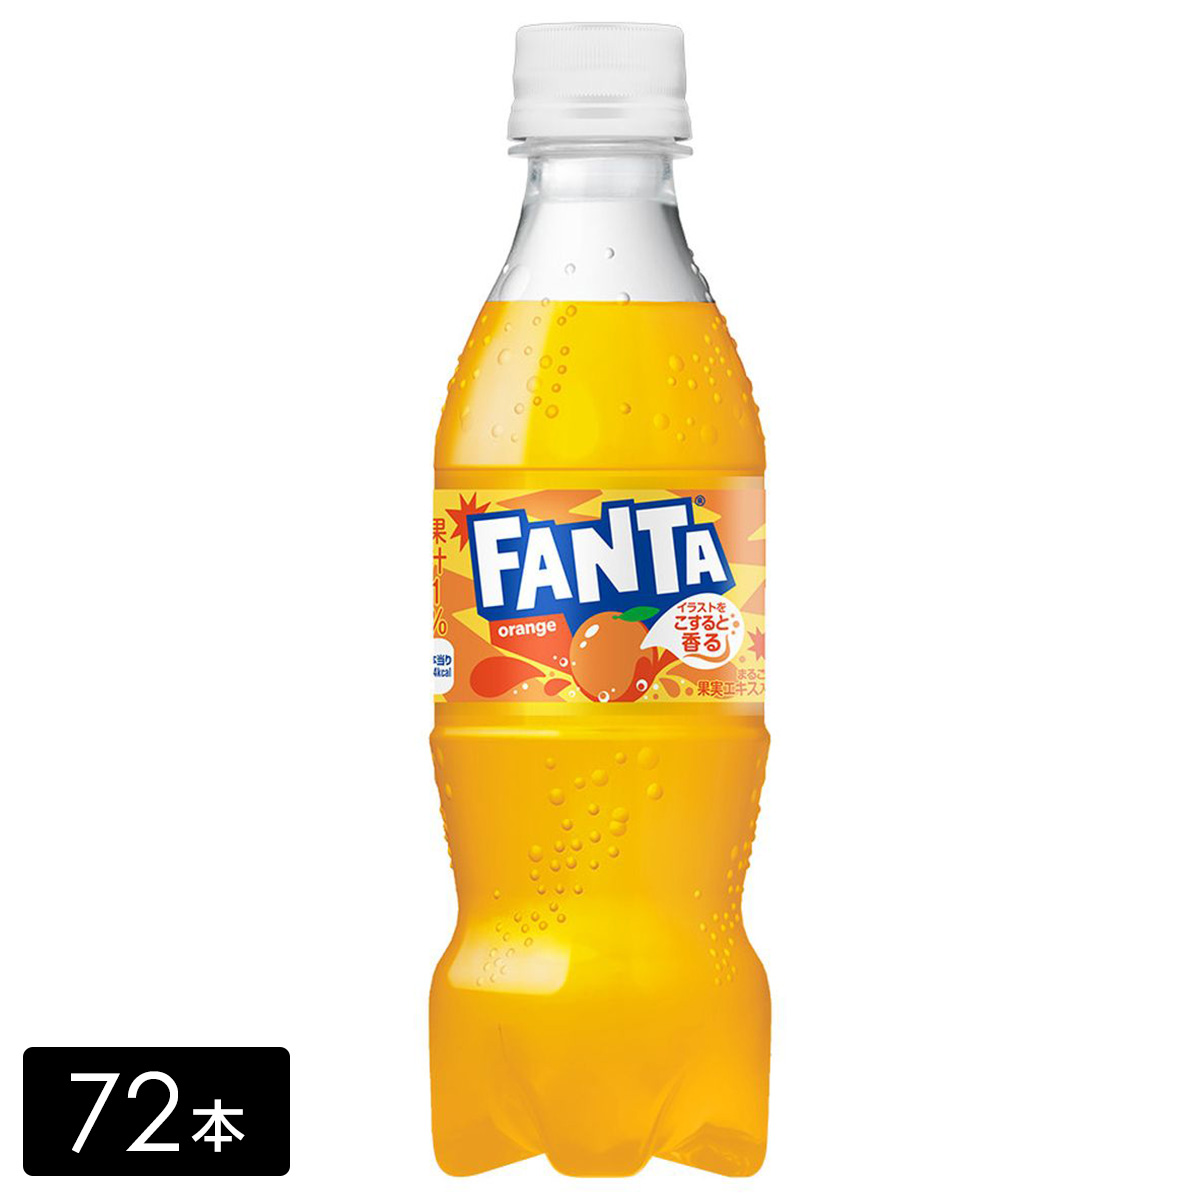 [送料無料]ファンタ オレンジ 350ml 72本(24本×3箱) 炭酸飲料 ペットボトル ケース売り まとめ買い